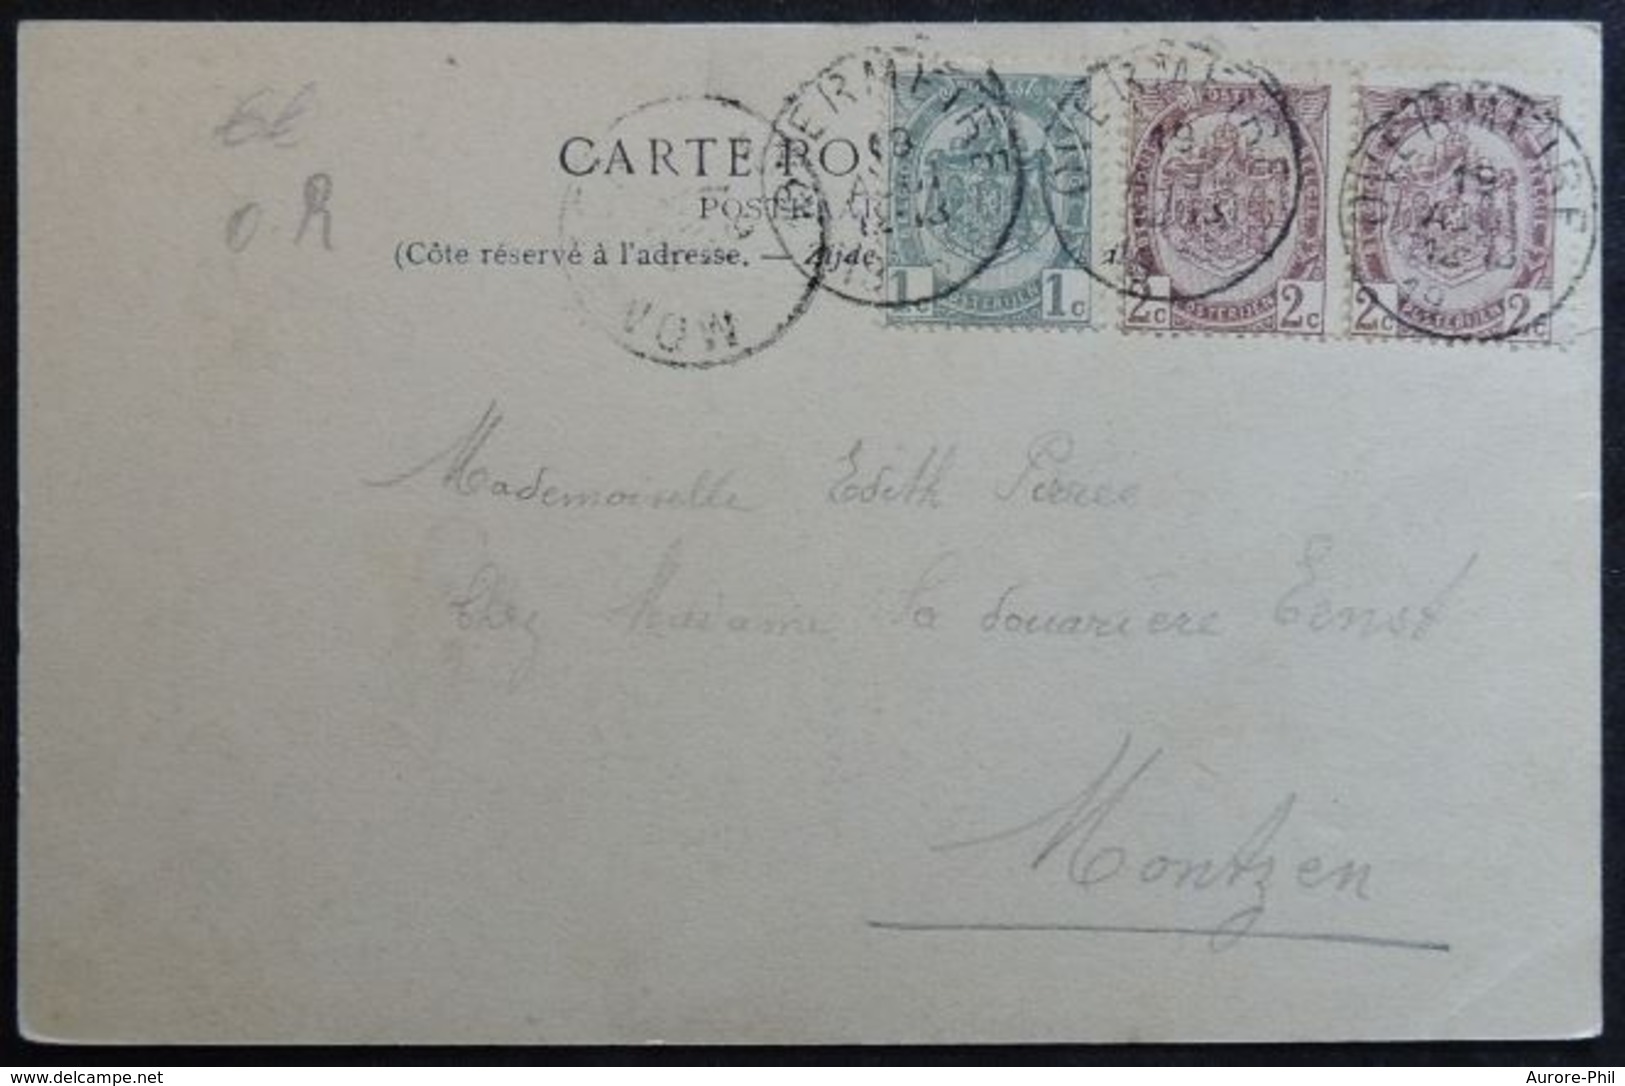 Overmeire Donk De Hangende Boom (Postzegels,Timbres 55 / 2c Brun, Bruin /Armoiries, Wapen / 1900) - Berlare